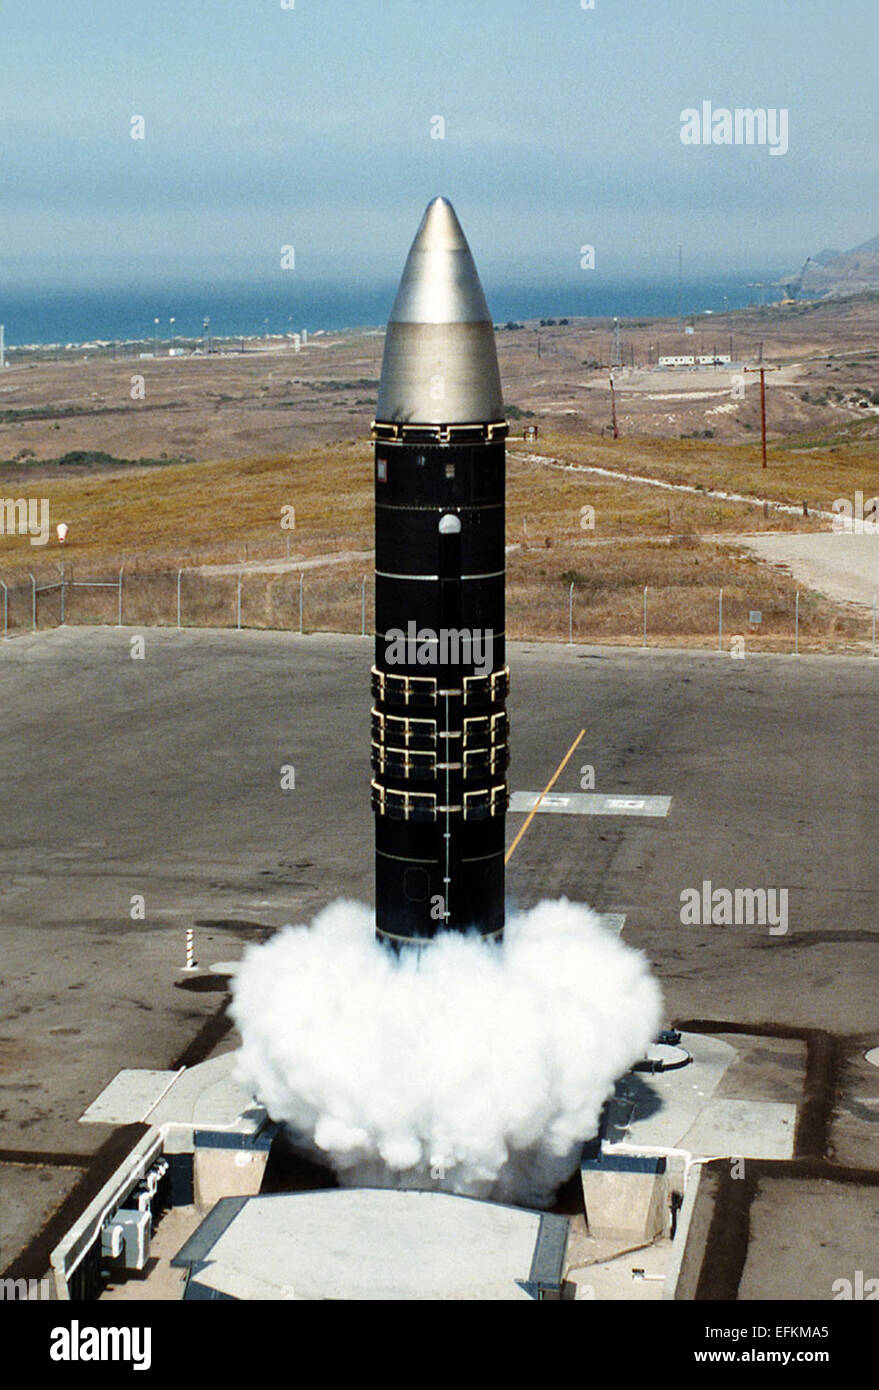 L'US Air Force II LGM-118 Minuteman missile balistique intercontinental test est lancé à Vandenberg Air Force Base, 10 août 1995 à Great Falls, Montana. La retraite de ce missile marque l'achèvement du Président Bush's '1991' pour que supprimé tous les missiles Minuteman II d'alerte. Banque D'Images